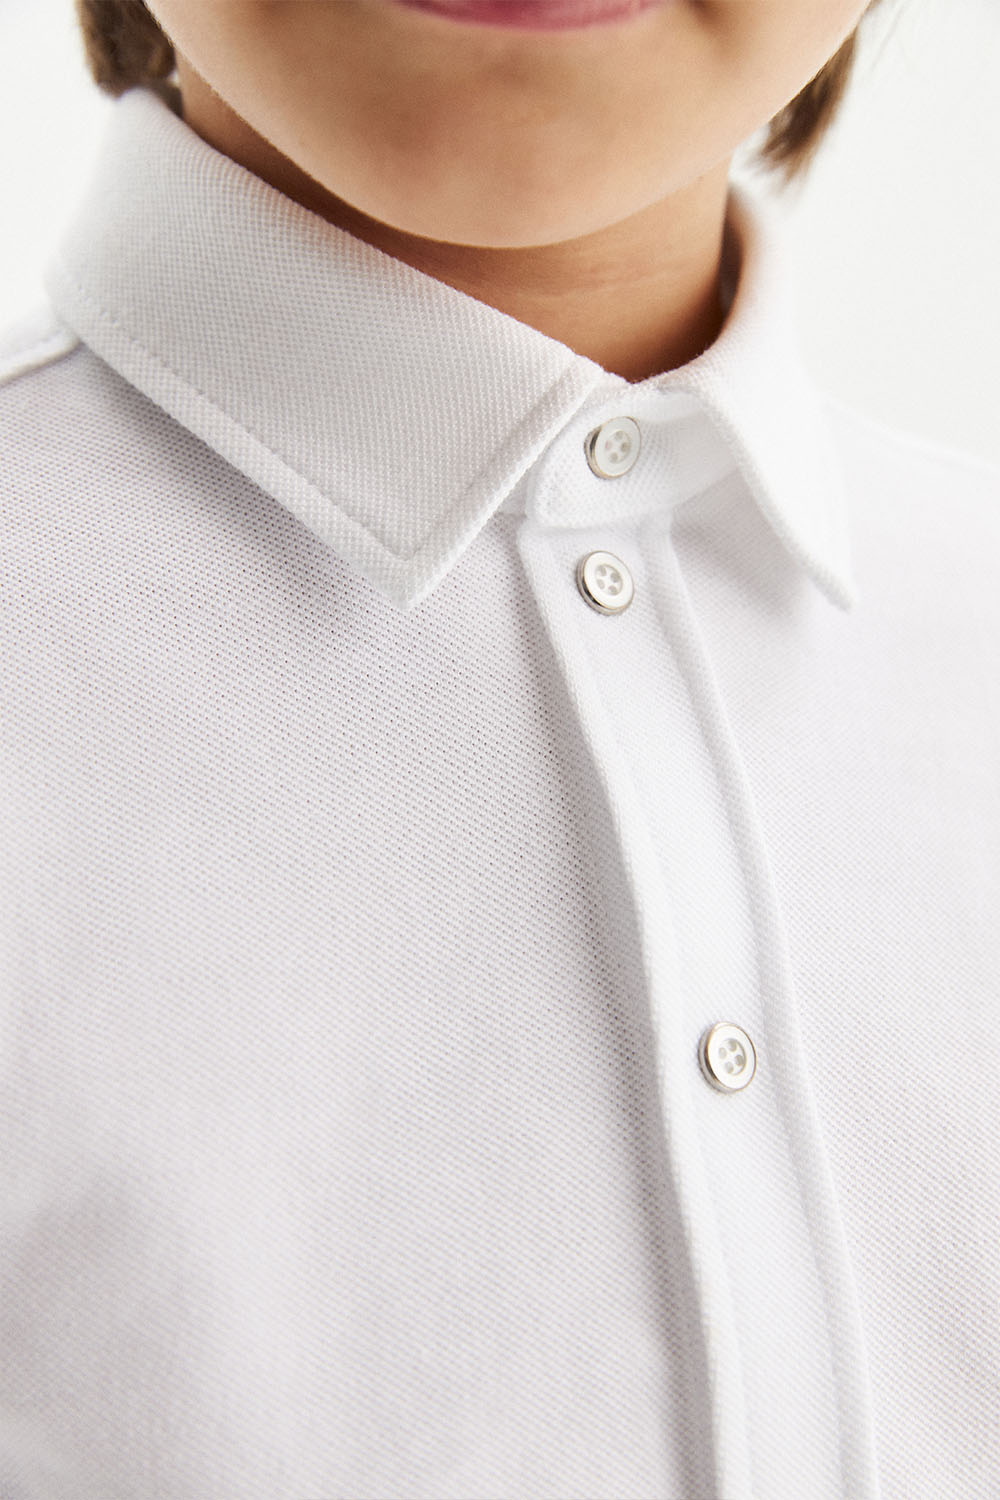 Трикотажная сорочка Comfort из 100% хлопка на кнопках (SSFSB-228-14101-200) Silver spoon